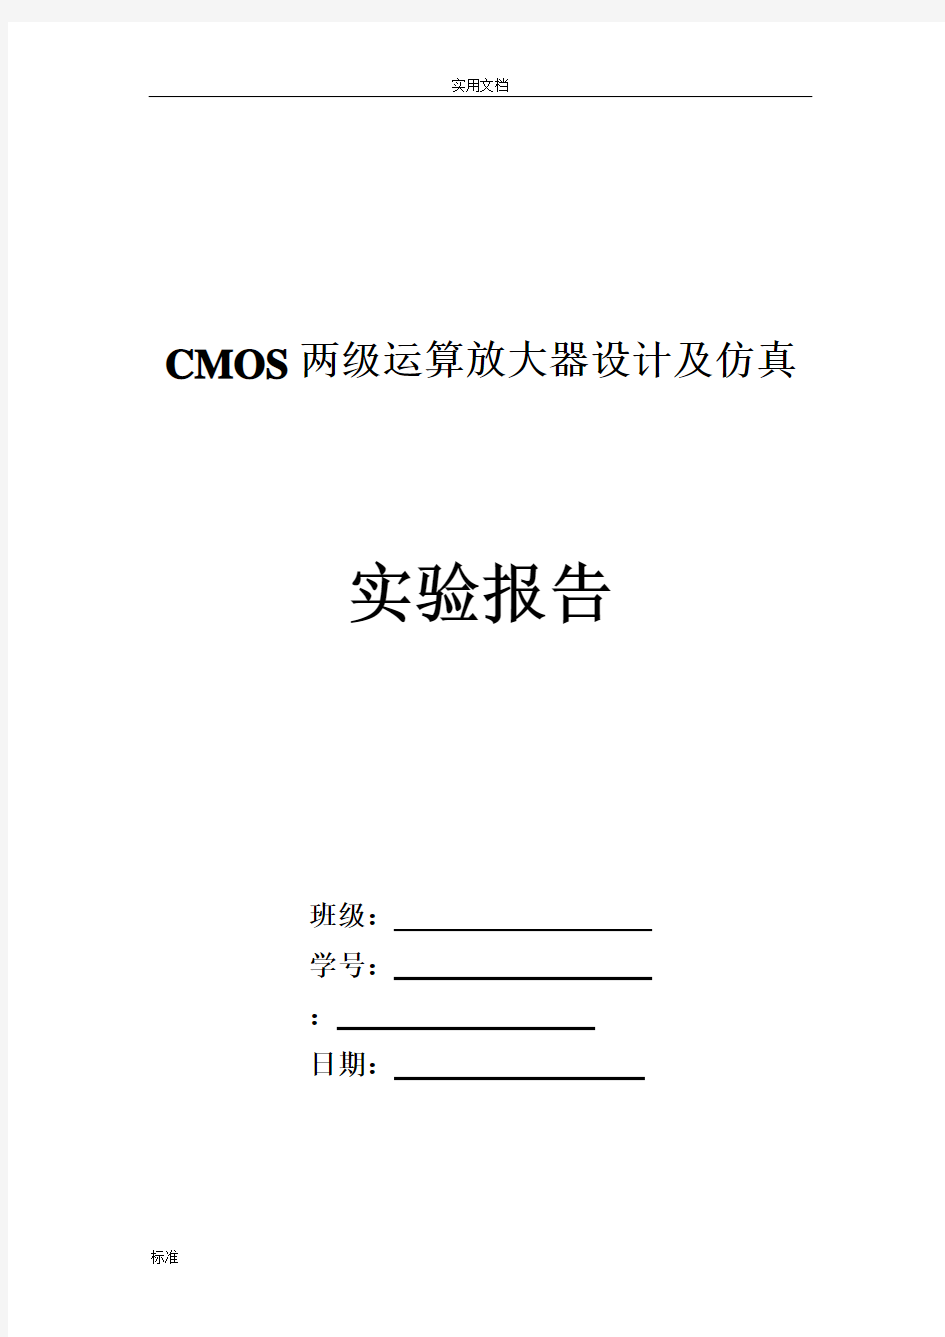 CMOS两级运算放大器_设计报告材料